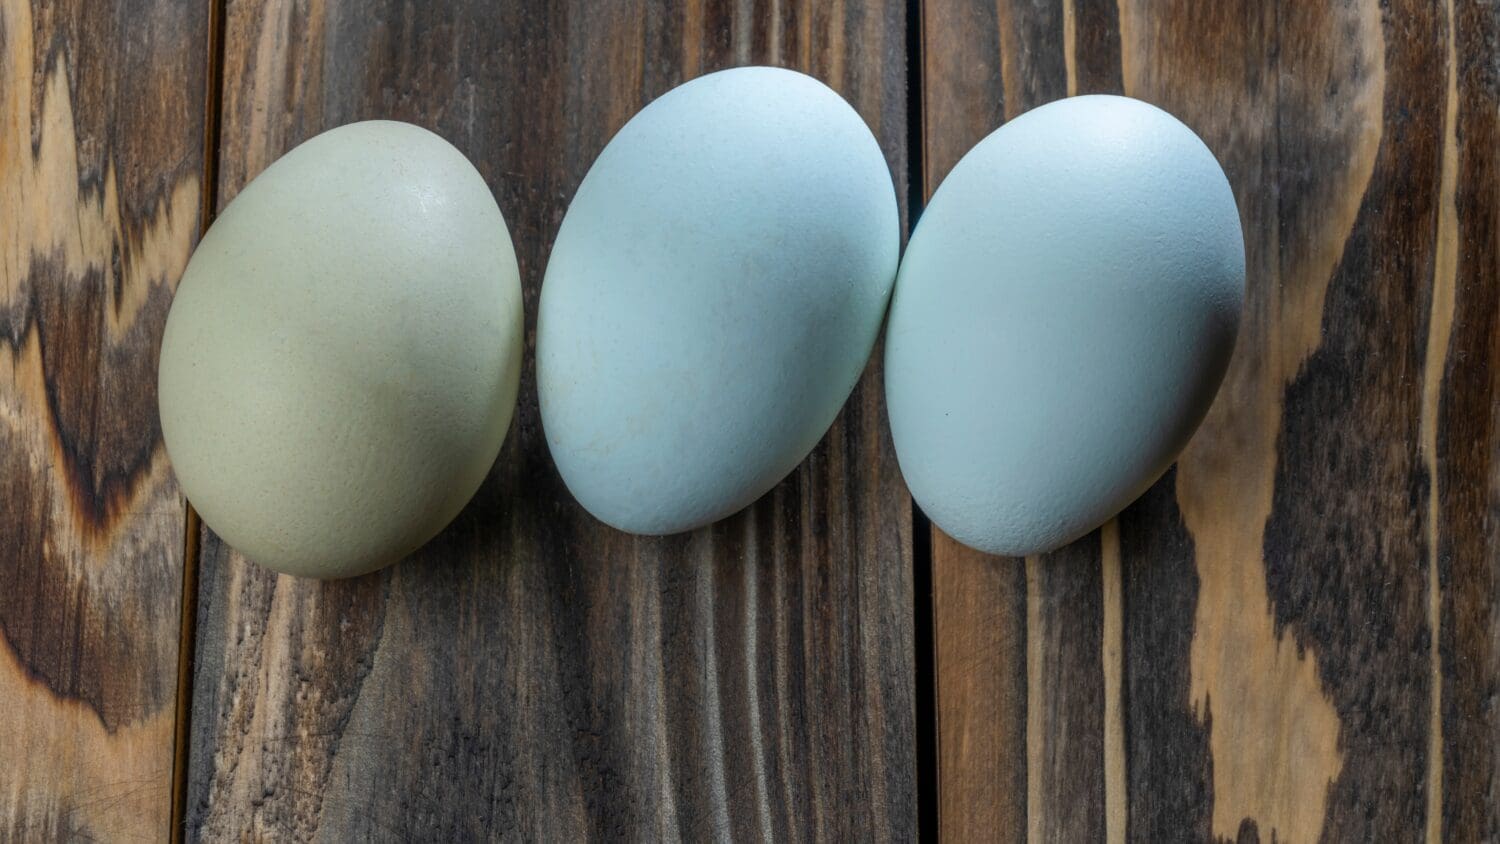 Uova di araucana su sfondo di legno. Tre uova azzurre di gallina araucana. Concetti del festival di Pasqua. Uovo di Pasqua. Uova di gallina araucana blu, colori molto belli. Spazio per il testo.